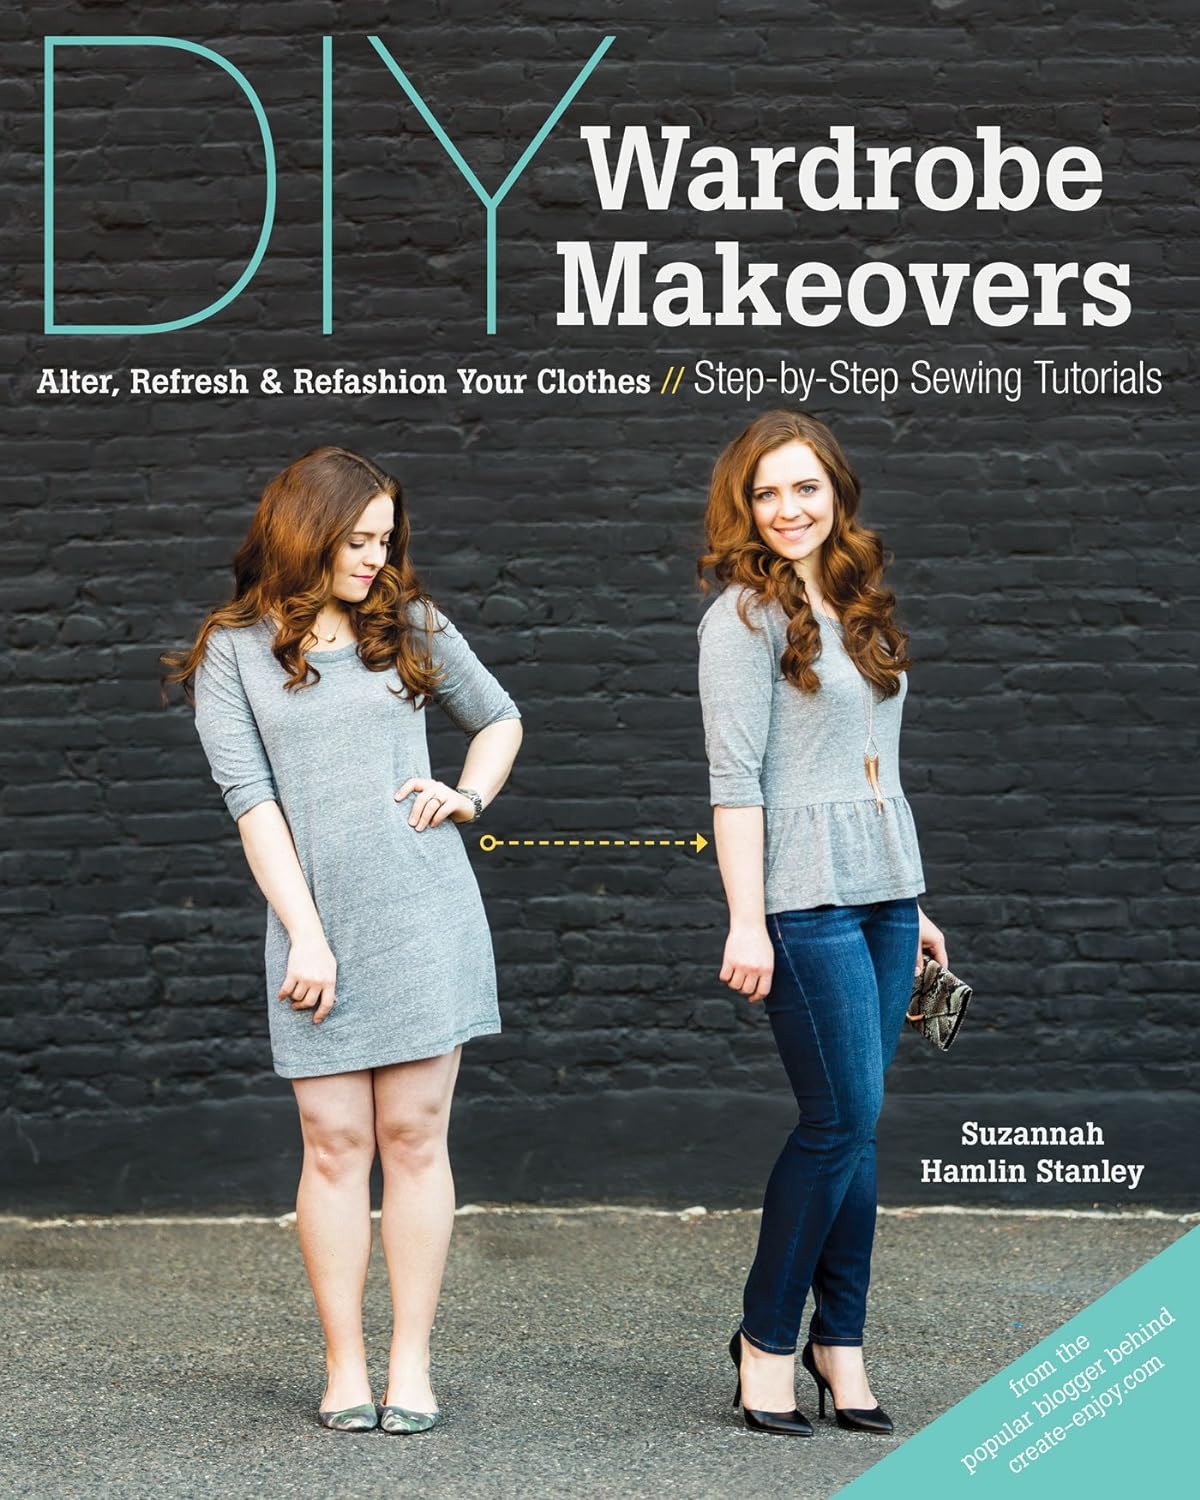 diy wardrobe makeovers book